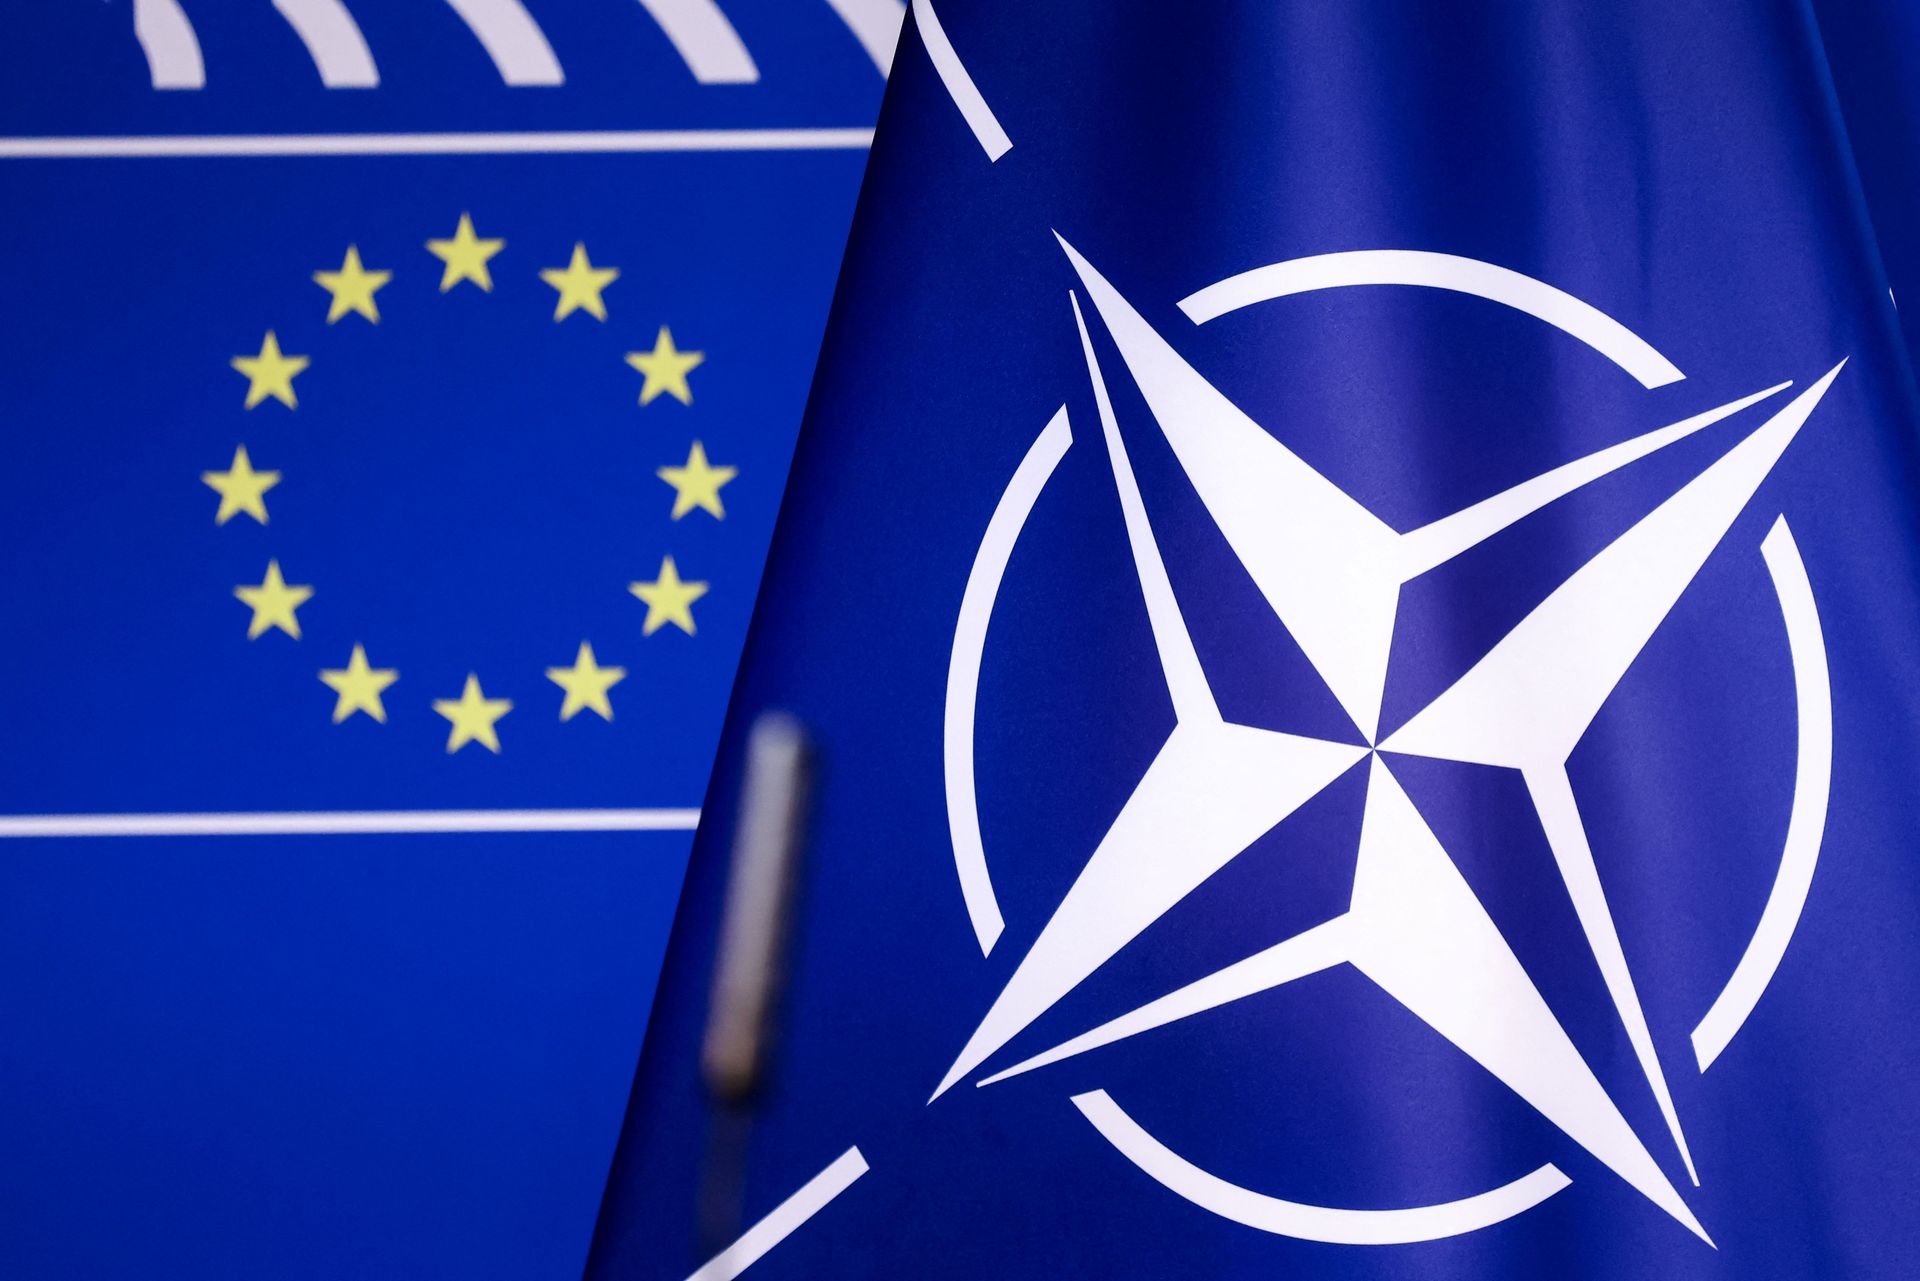 Limit NATO expansion